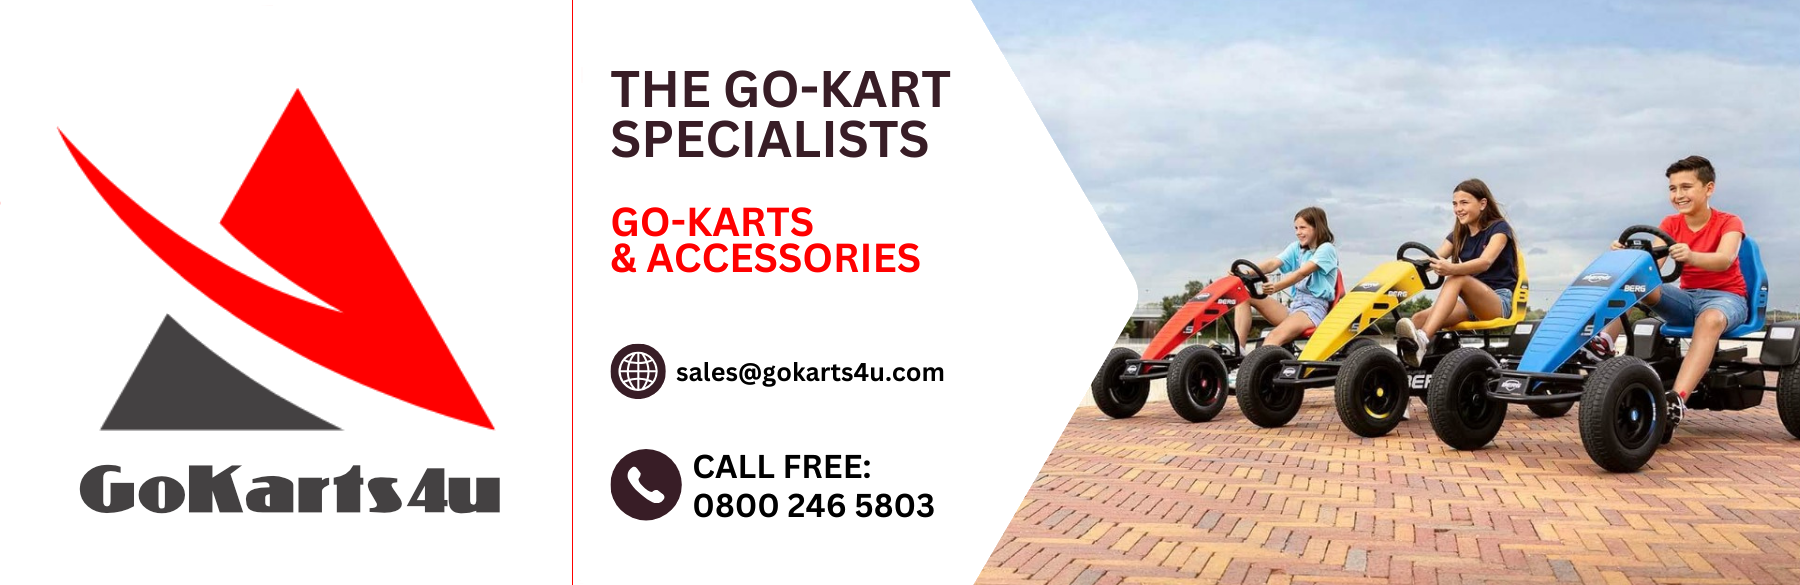 Go-karts4u - The Go-kart Specialists